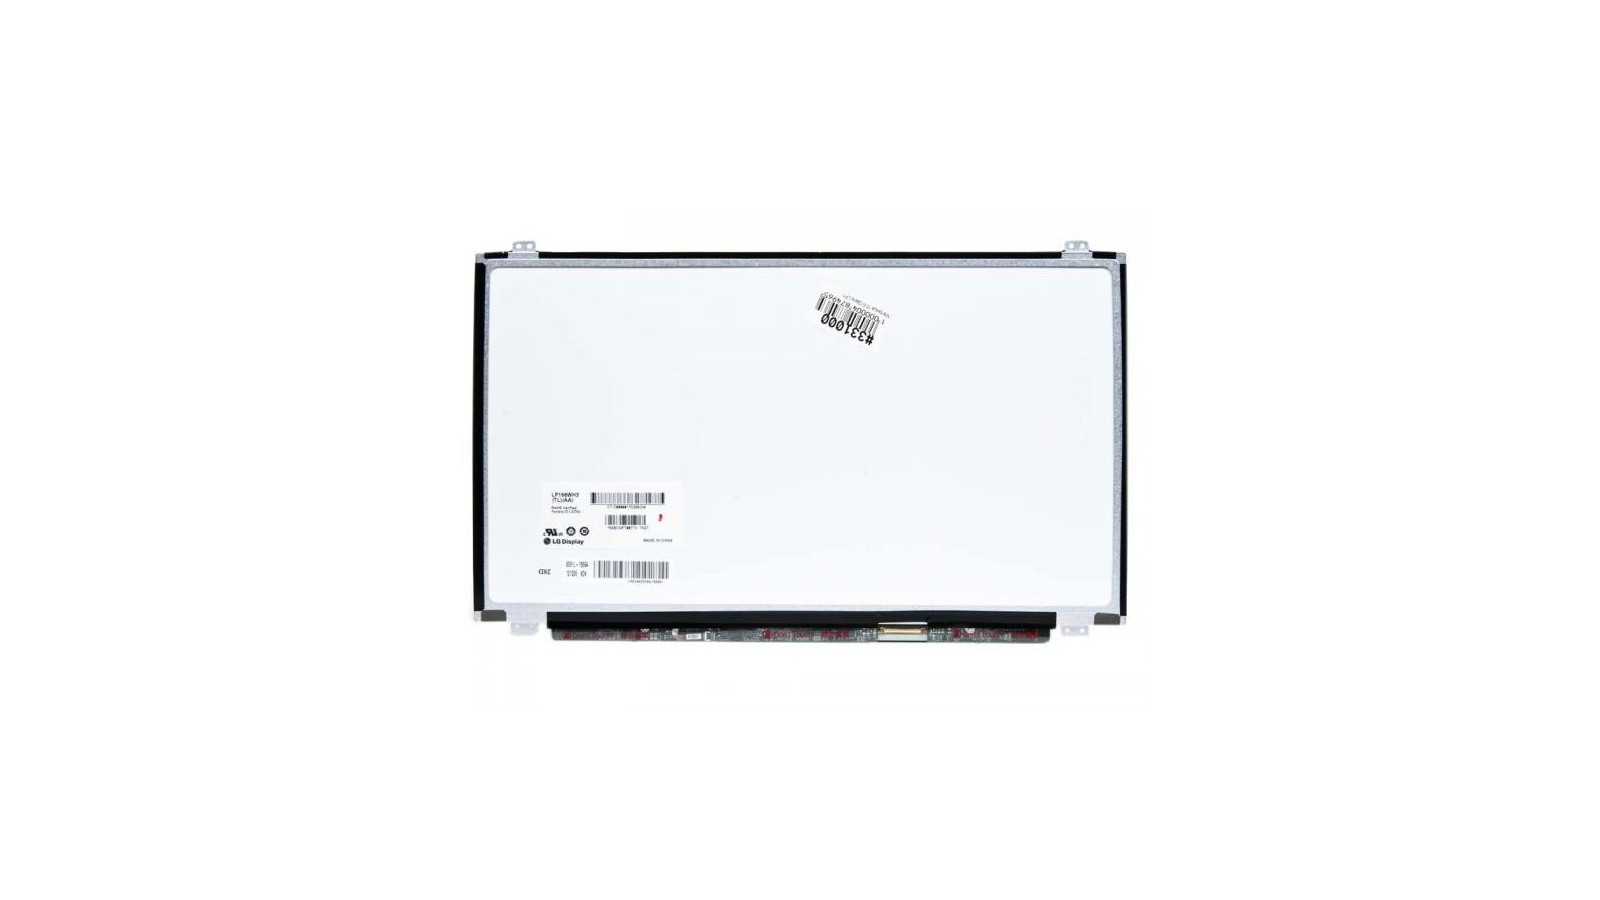 Display LCD Schermo 15,6 LED compatibile con Acer Aspire E5-571G connettore 30 pin